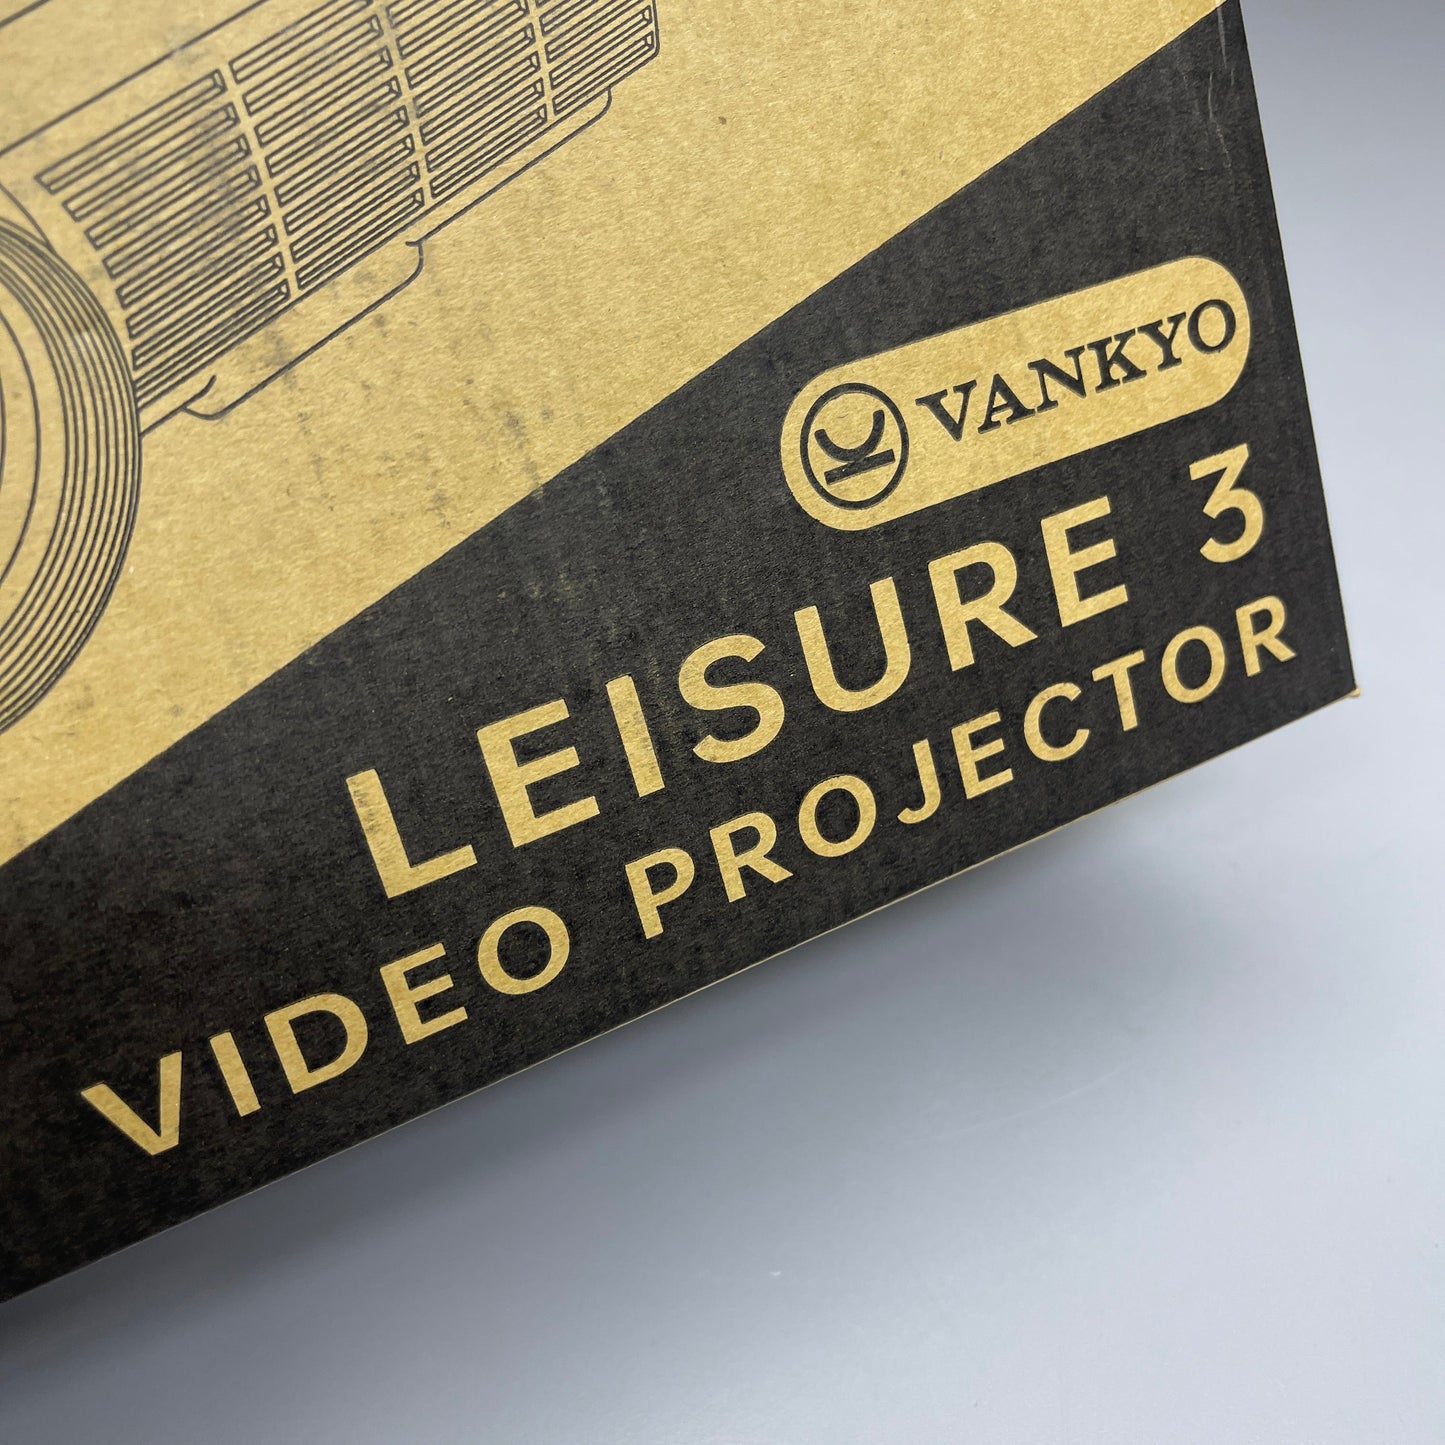 ZA@ VANKYO Leisure 3 Video Projector 480p HDMI/USB 8"W x 6.25"L White